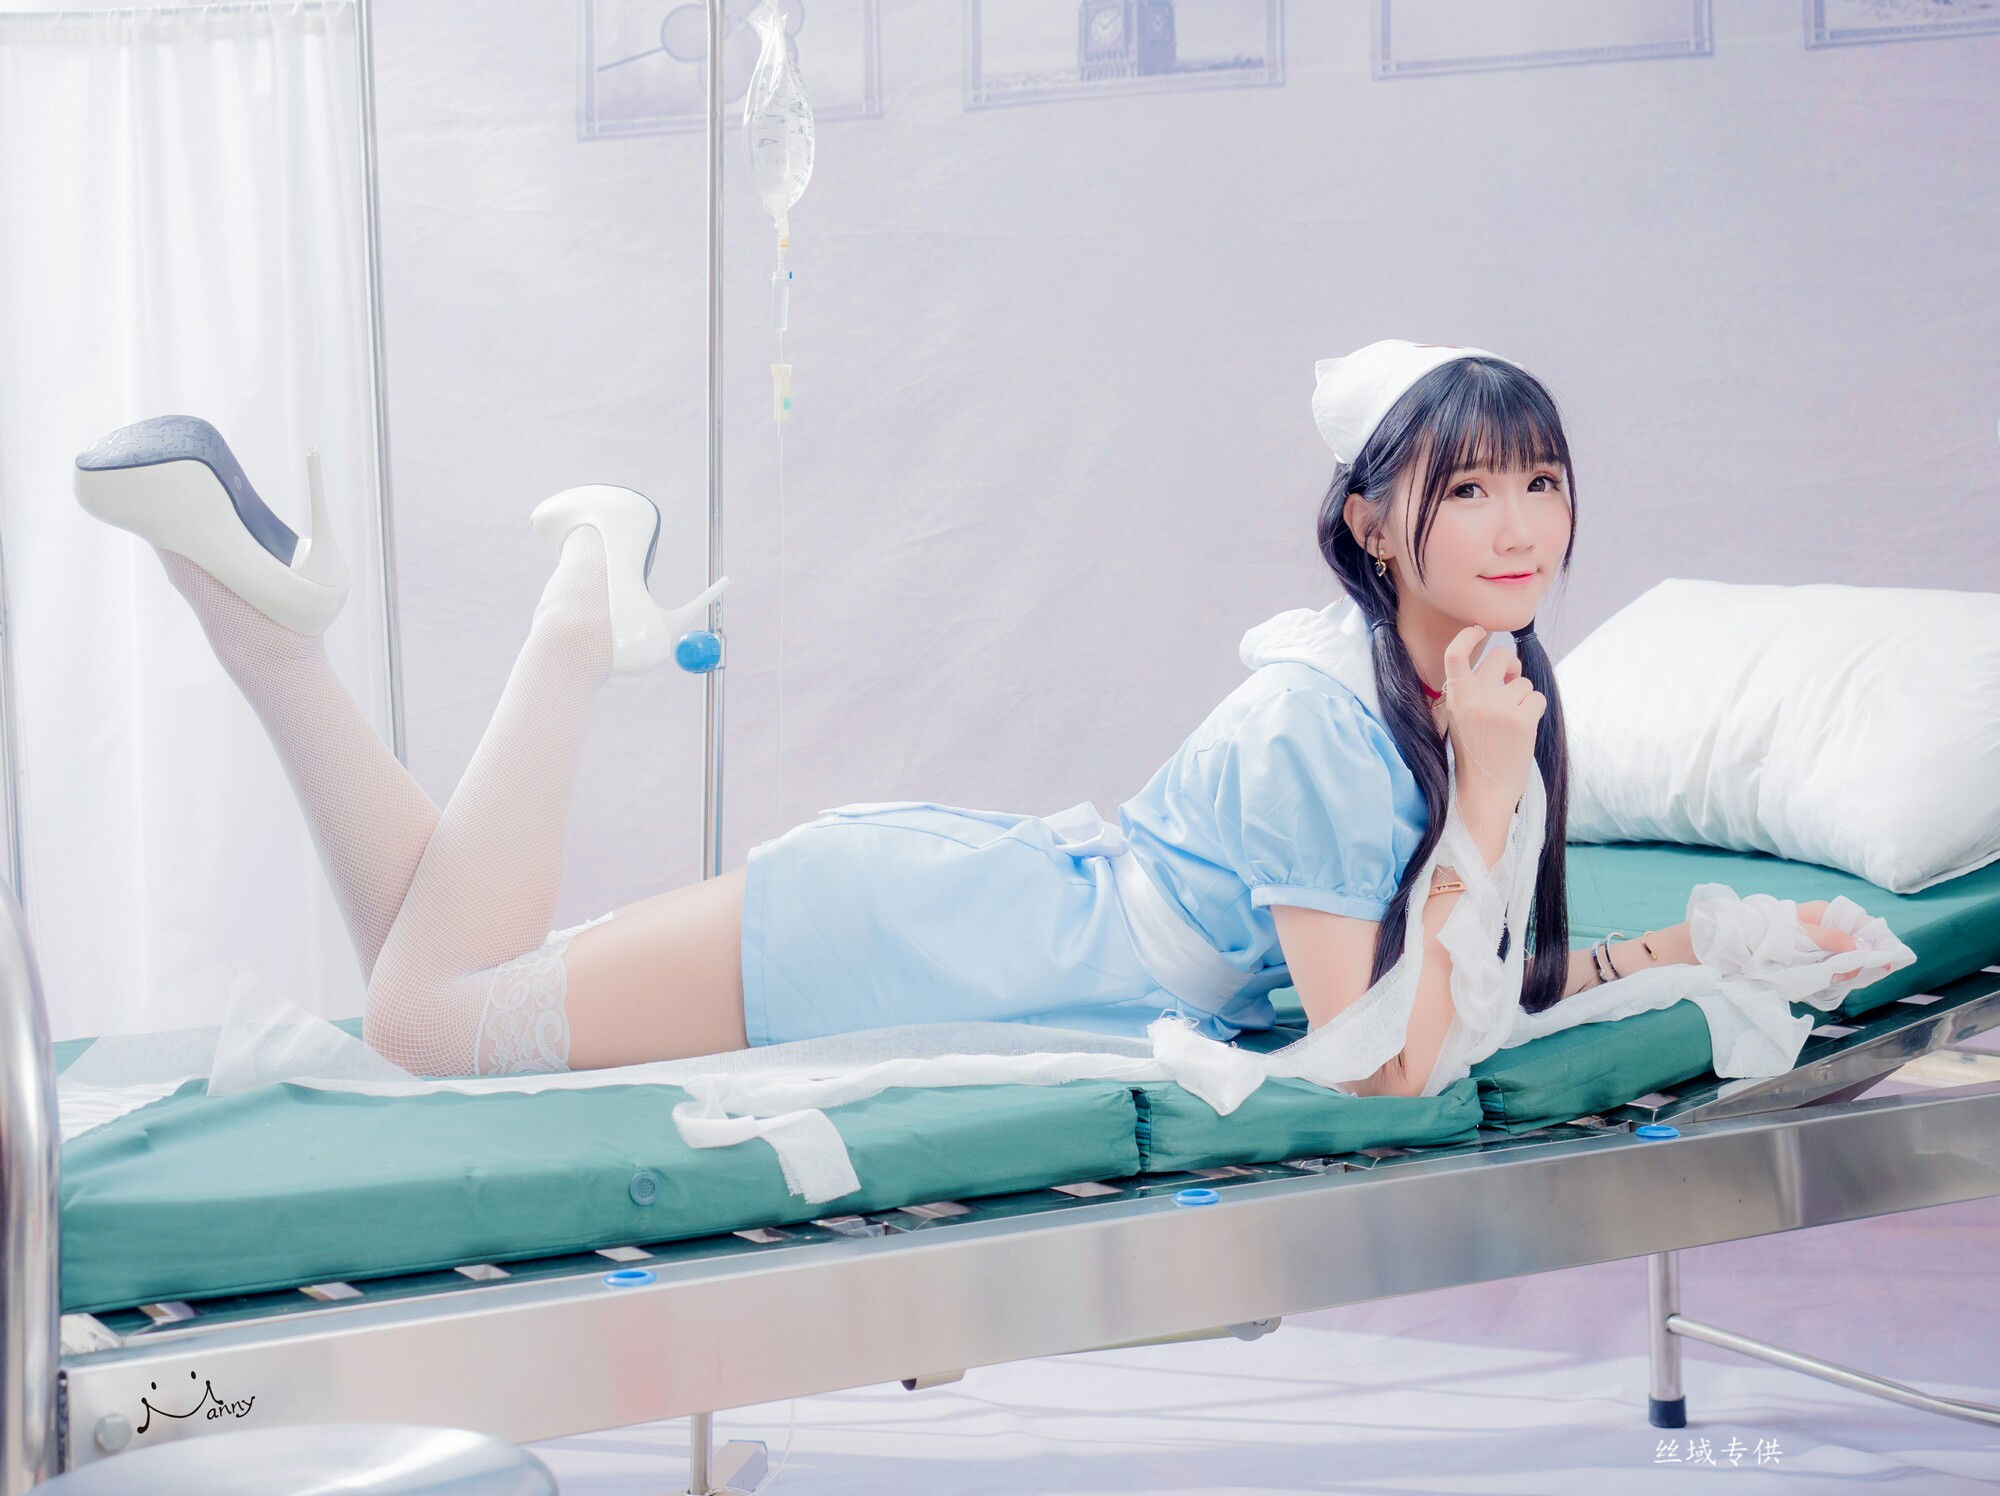 [Taiwan Zhengmei] Qiao Queer “Powder Blue Nurses” Photo Album